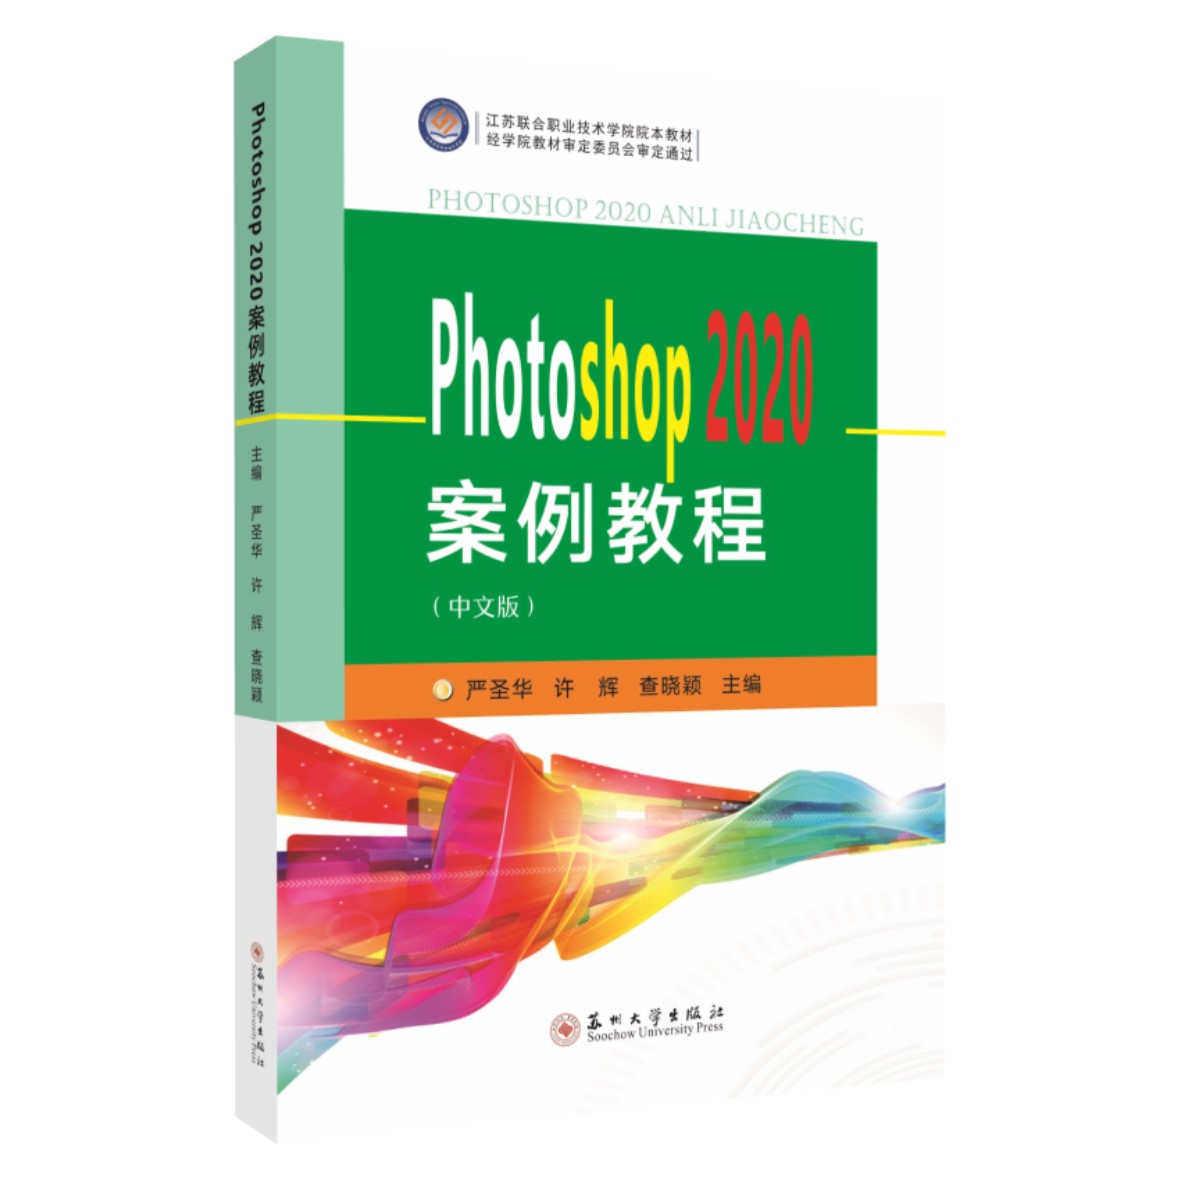 正版 包邮 Photoshop 2020案例教程:中文版 9787567238367 严圣华  许辉  查晓颖  主编